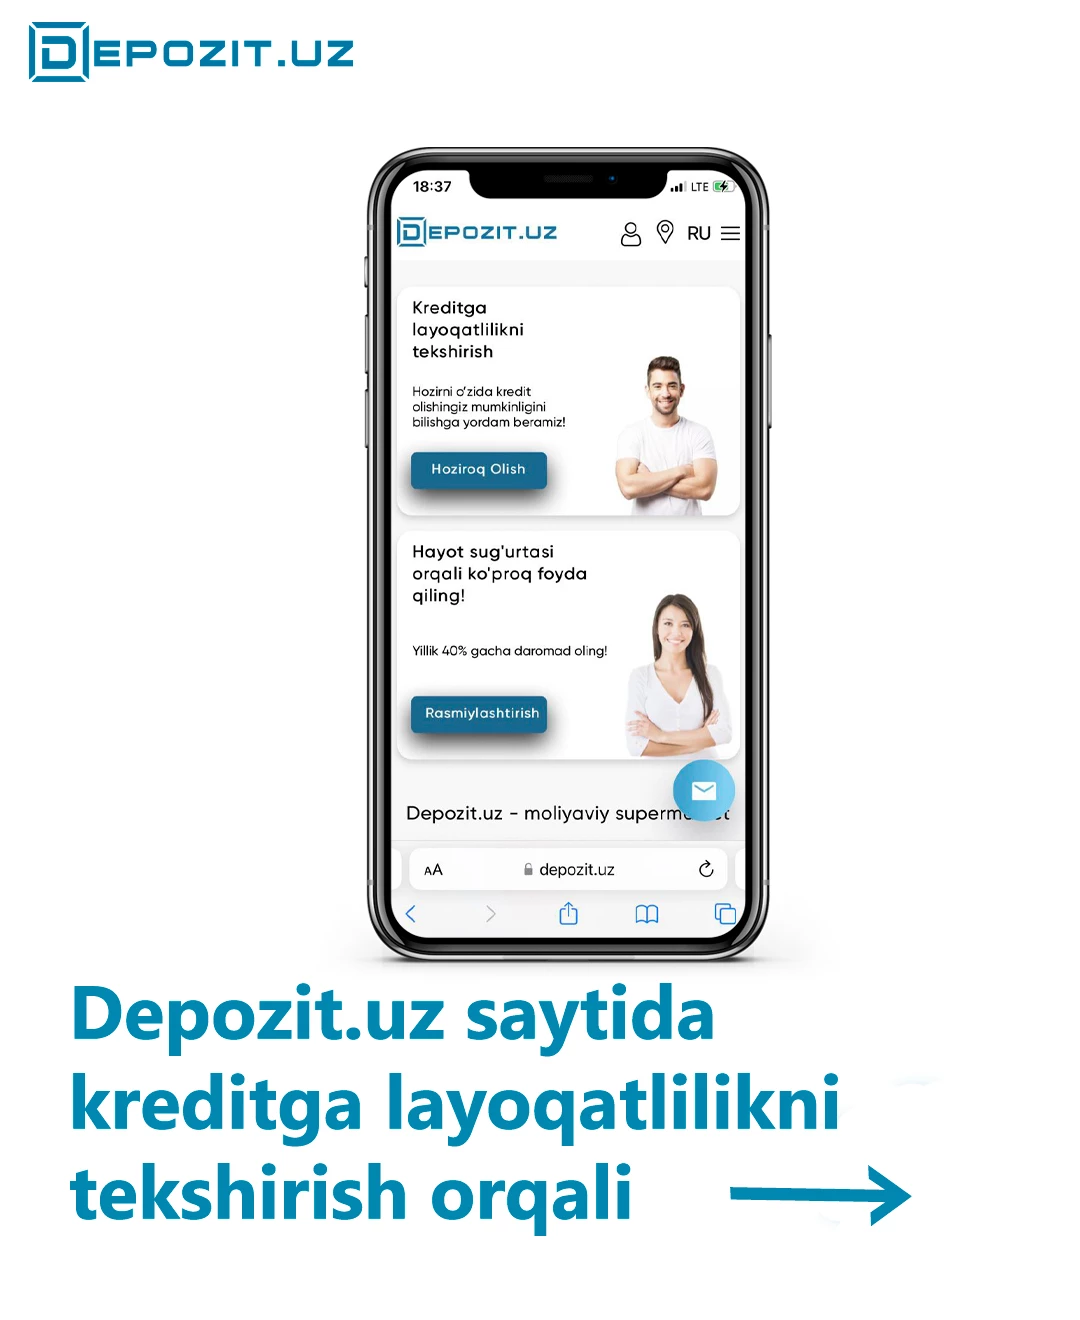 Проверьте свою кредитоспособность на сайте Depozit.uz!